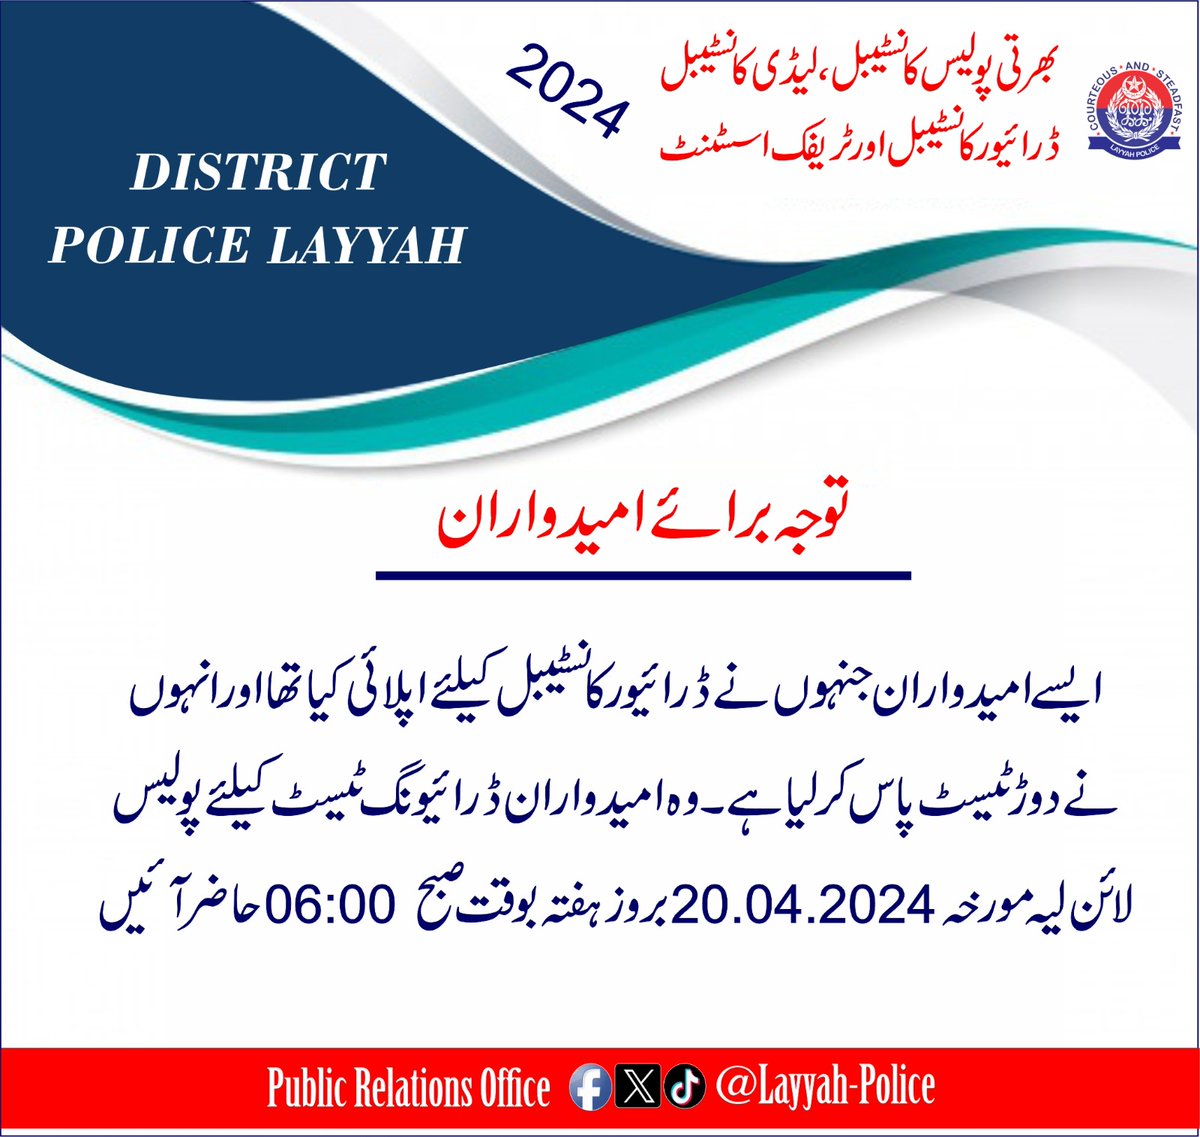 ایسے امیدوران جنہوں نے ڈرائیور کانسٹیبل کےلئے اپلائی کیا تھا اور دوڑ ٹیسٹ پاس کر لیا ہے ایسے امیدوران ڈرائیونگ ٹیسٹ کے لیے مورخہ 20-04-2024 بروز ہفتہ صبح 6:00 پولیس لائنز لیہ آئیں گے۔۔ #LayyahPolice #PunjabPolice #AtYourService #PoliceAwamSaathSaath #Recruitment2024